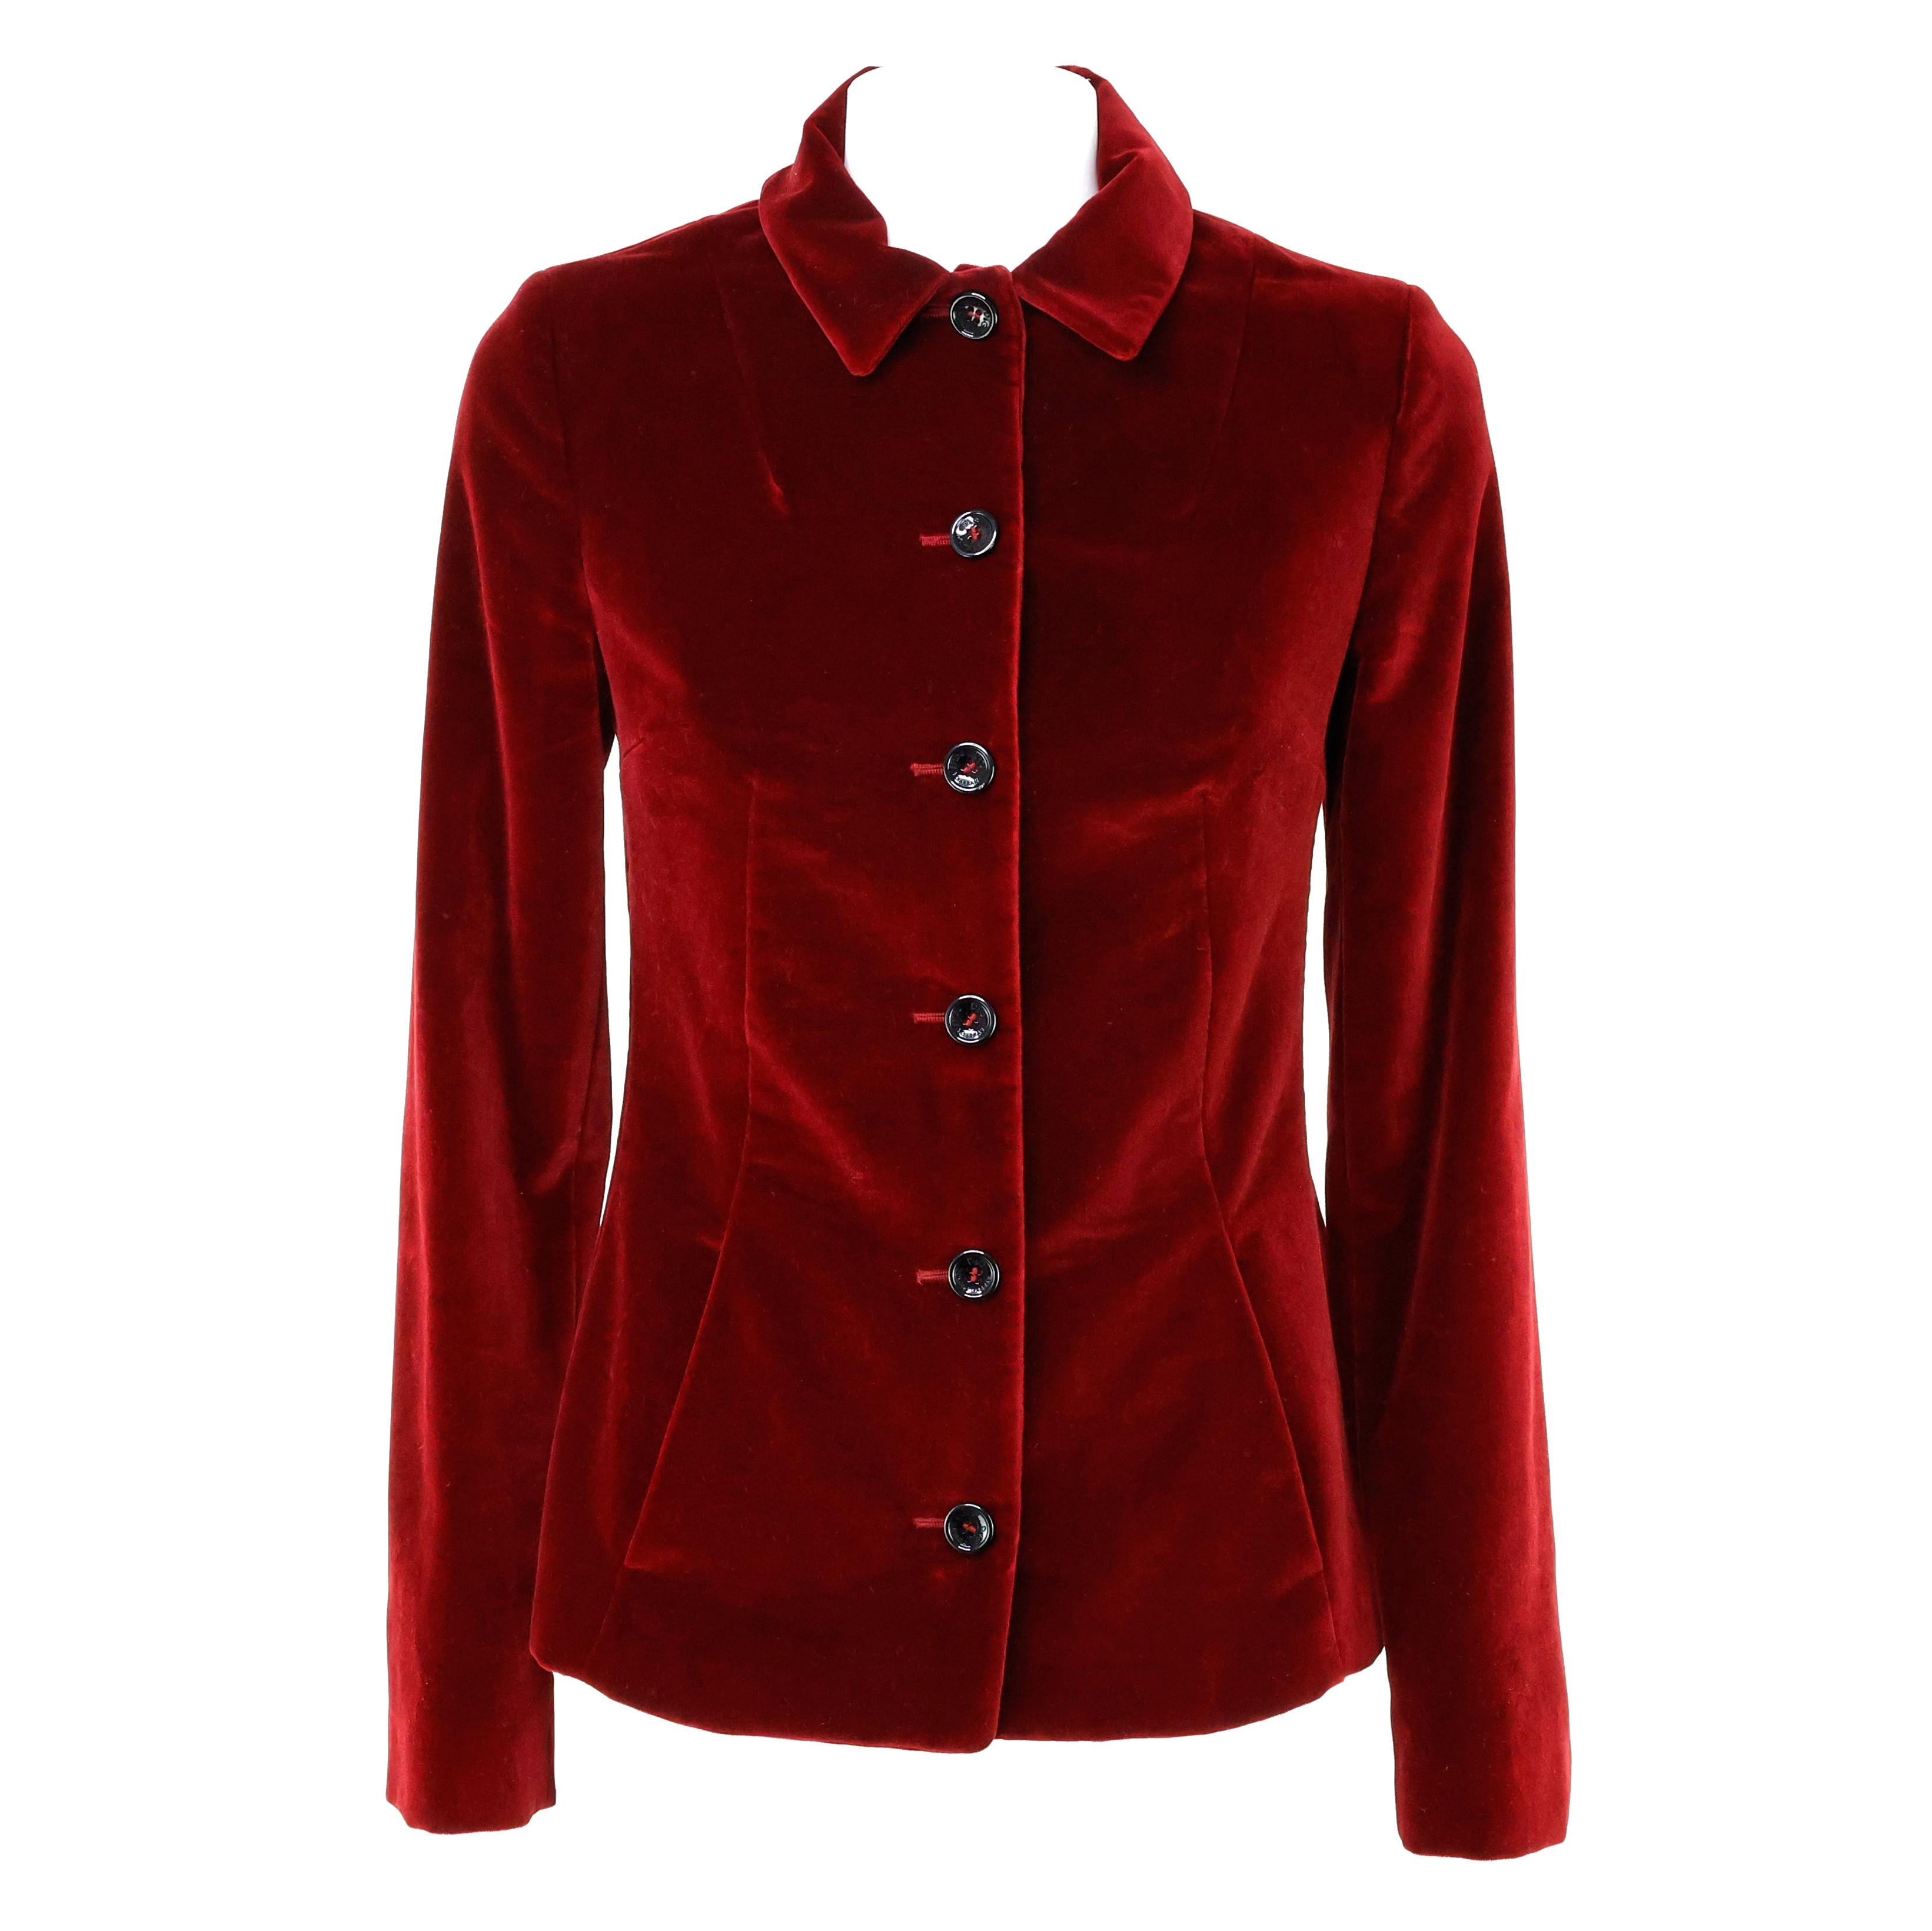 Dolce e Gabbana Jacke in Samt Farbe rot / bordeaux. Größe 40 IT.


Bedingung:
Wirklich gut.